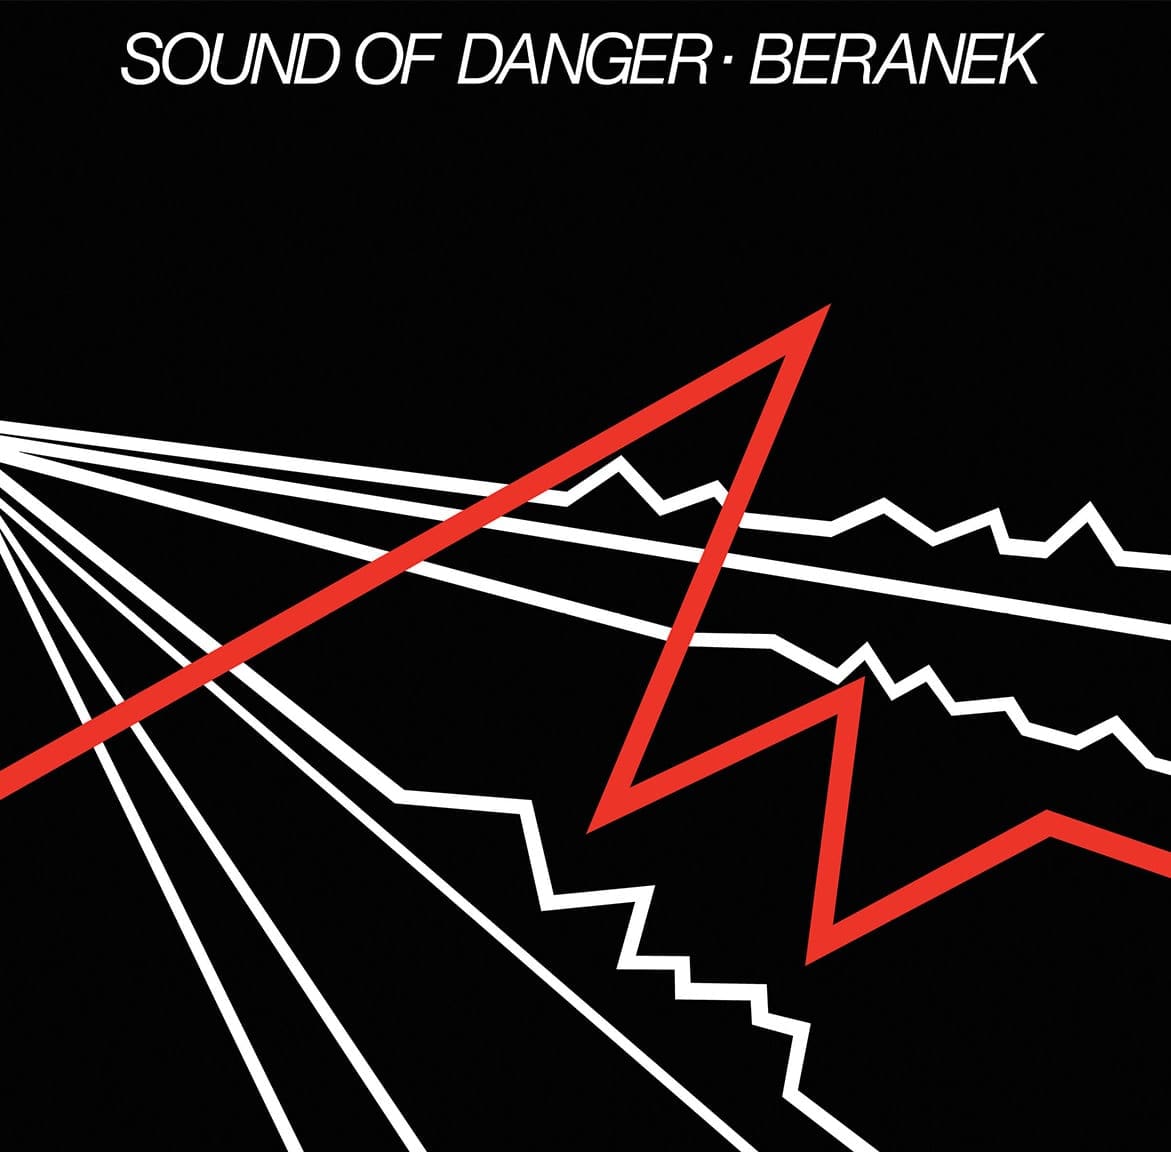 Beranek - Sound of danger